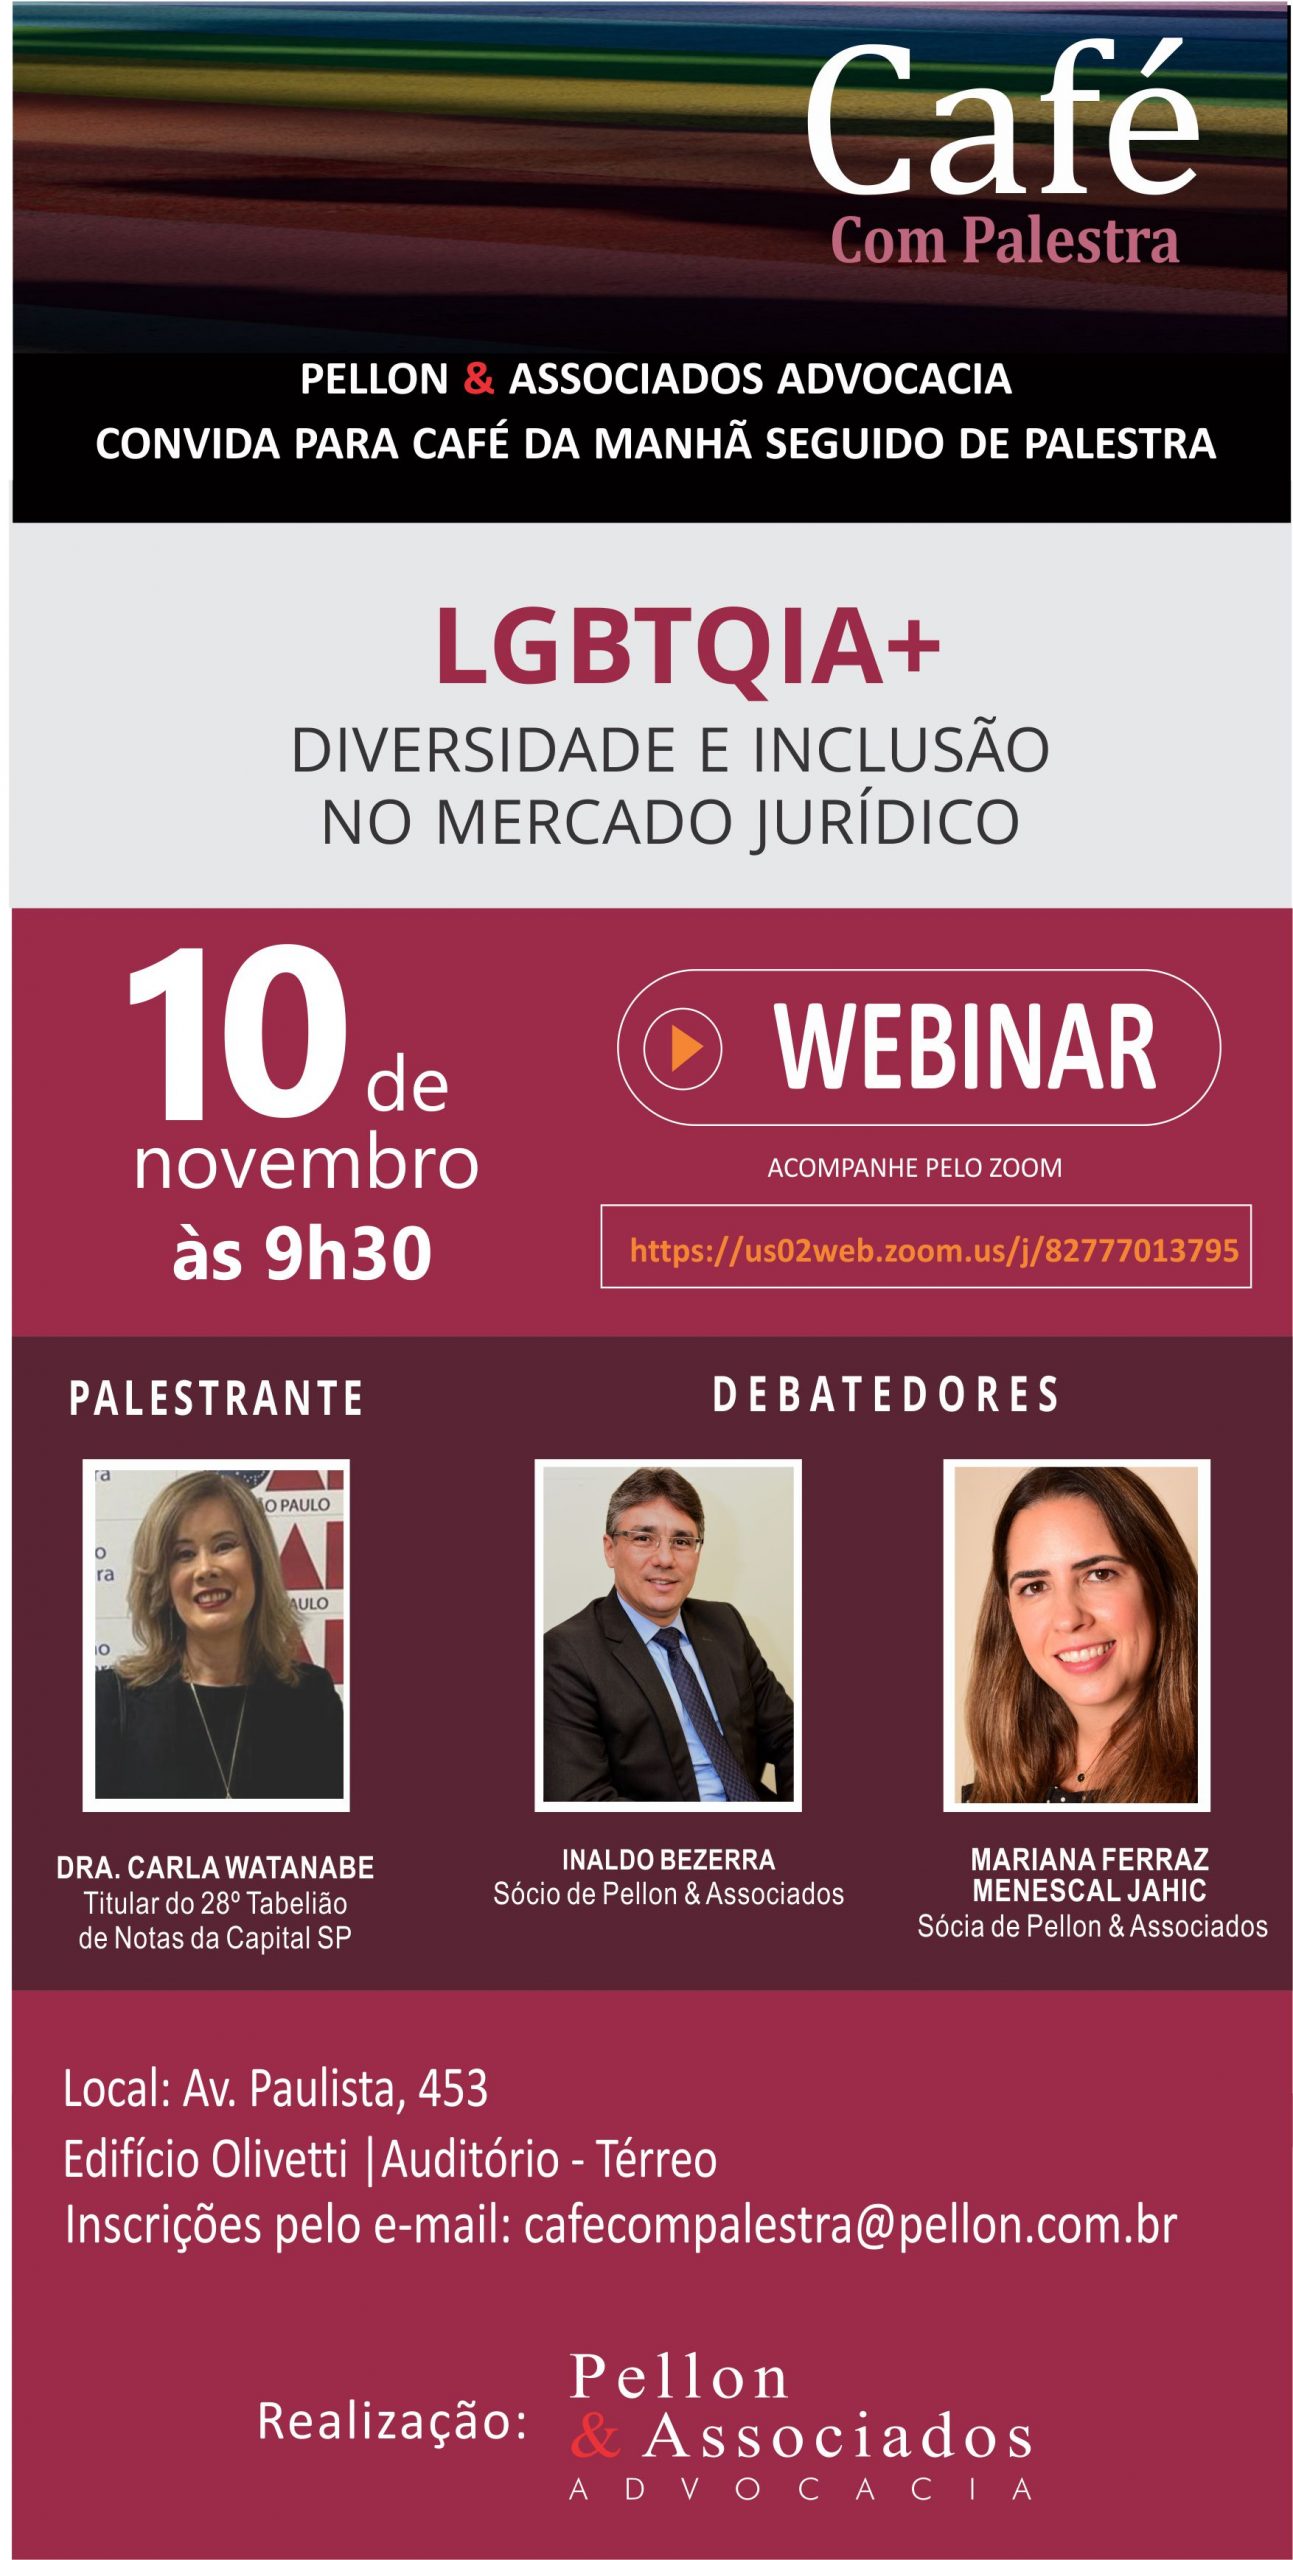 LGBTQIA+ DIVERSIDADE E INCLUSÃO NO MERCADO JURÍDICO